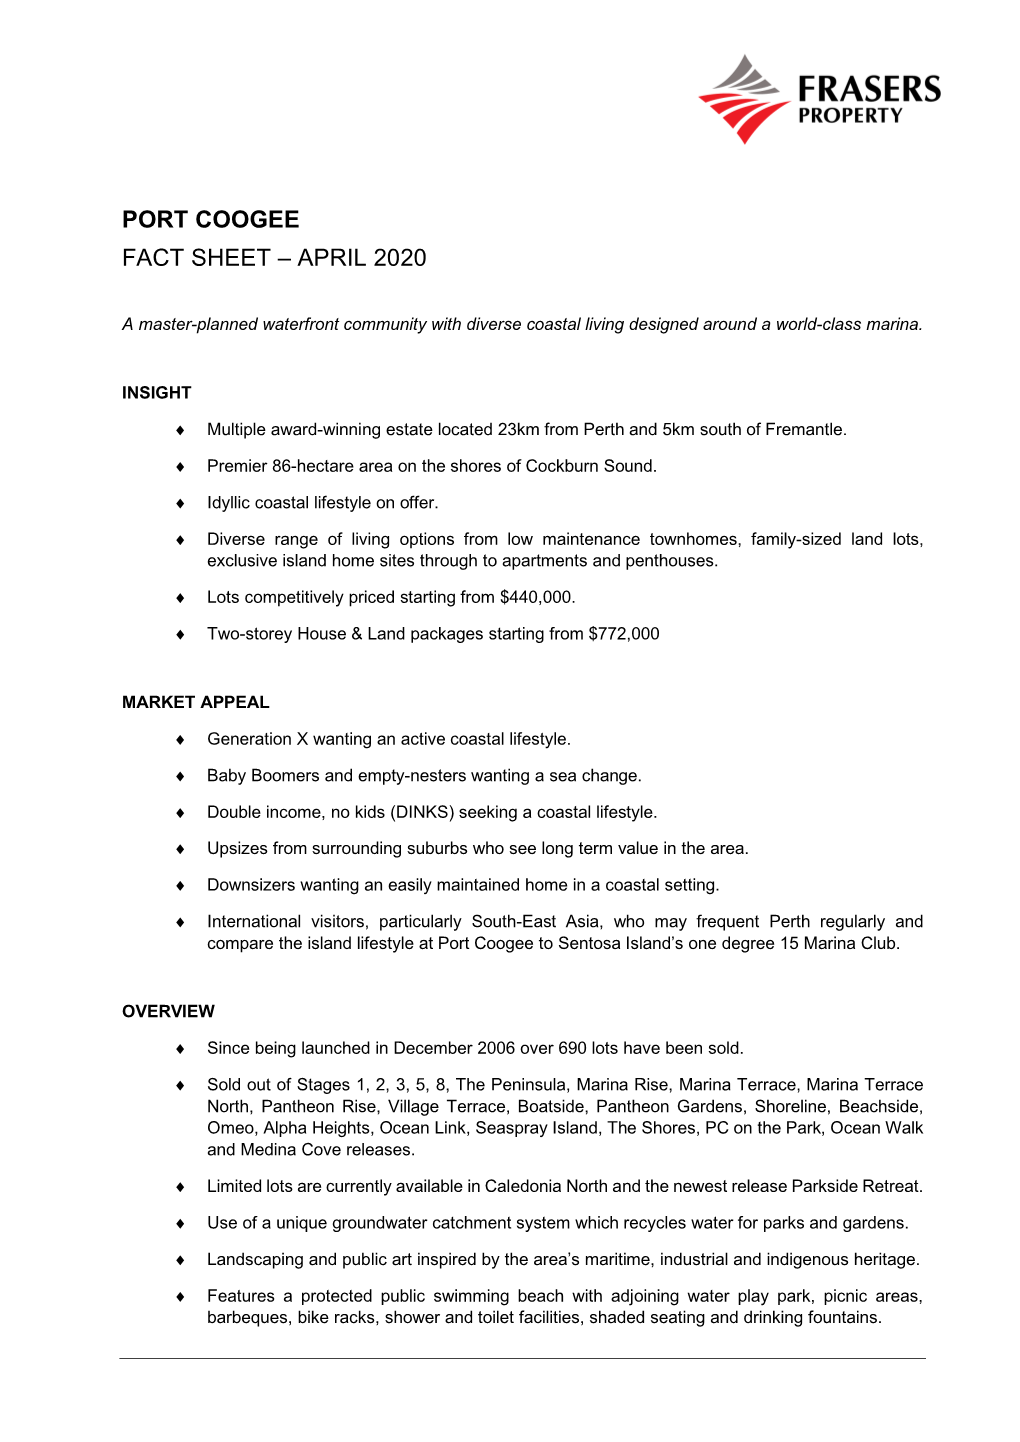 Port Coogee Fact Sheet – April 2020